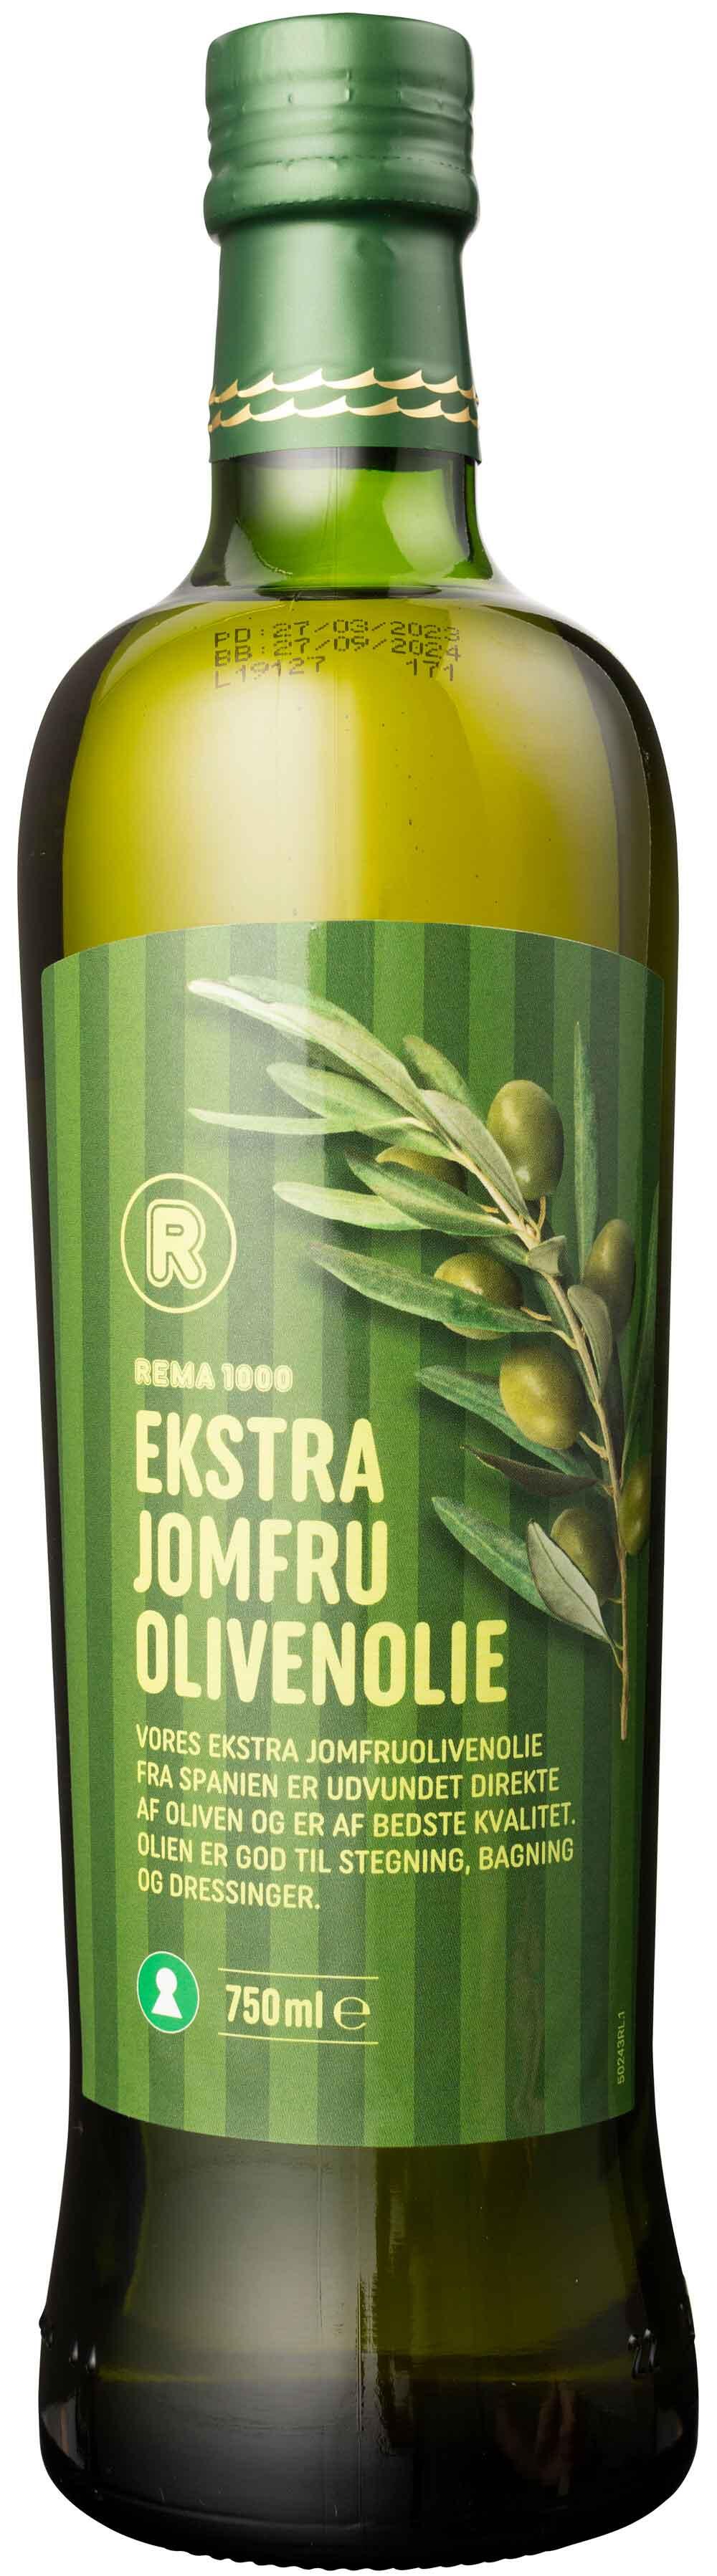 Ekstra jomfru olivenolie Rema 1000